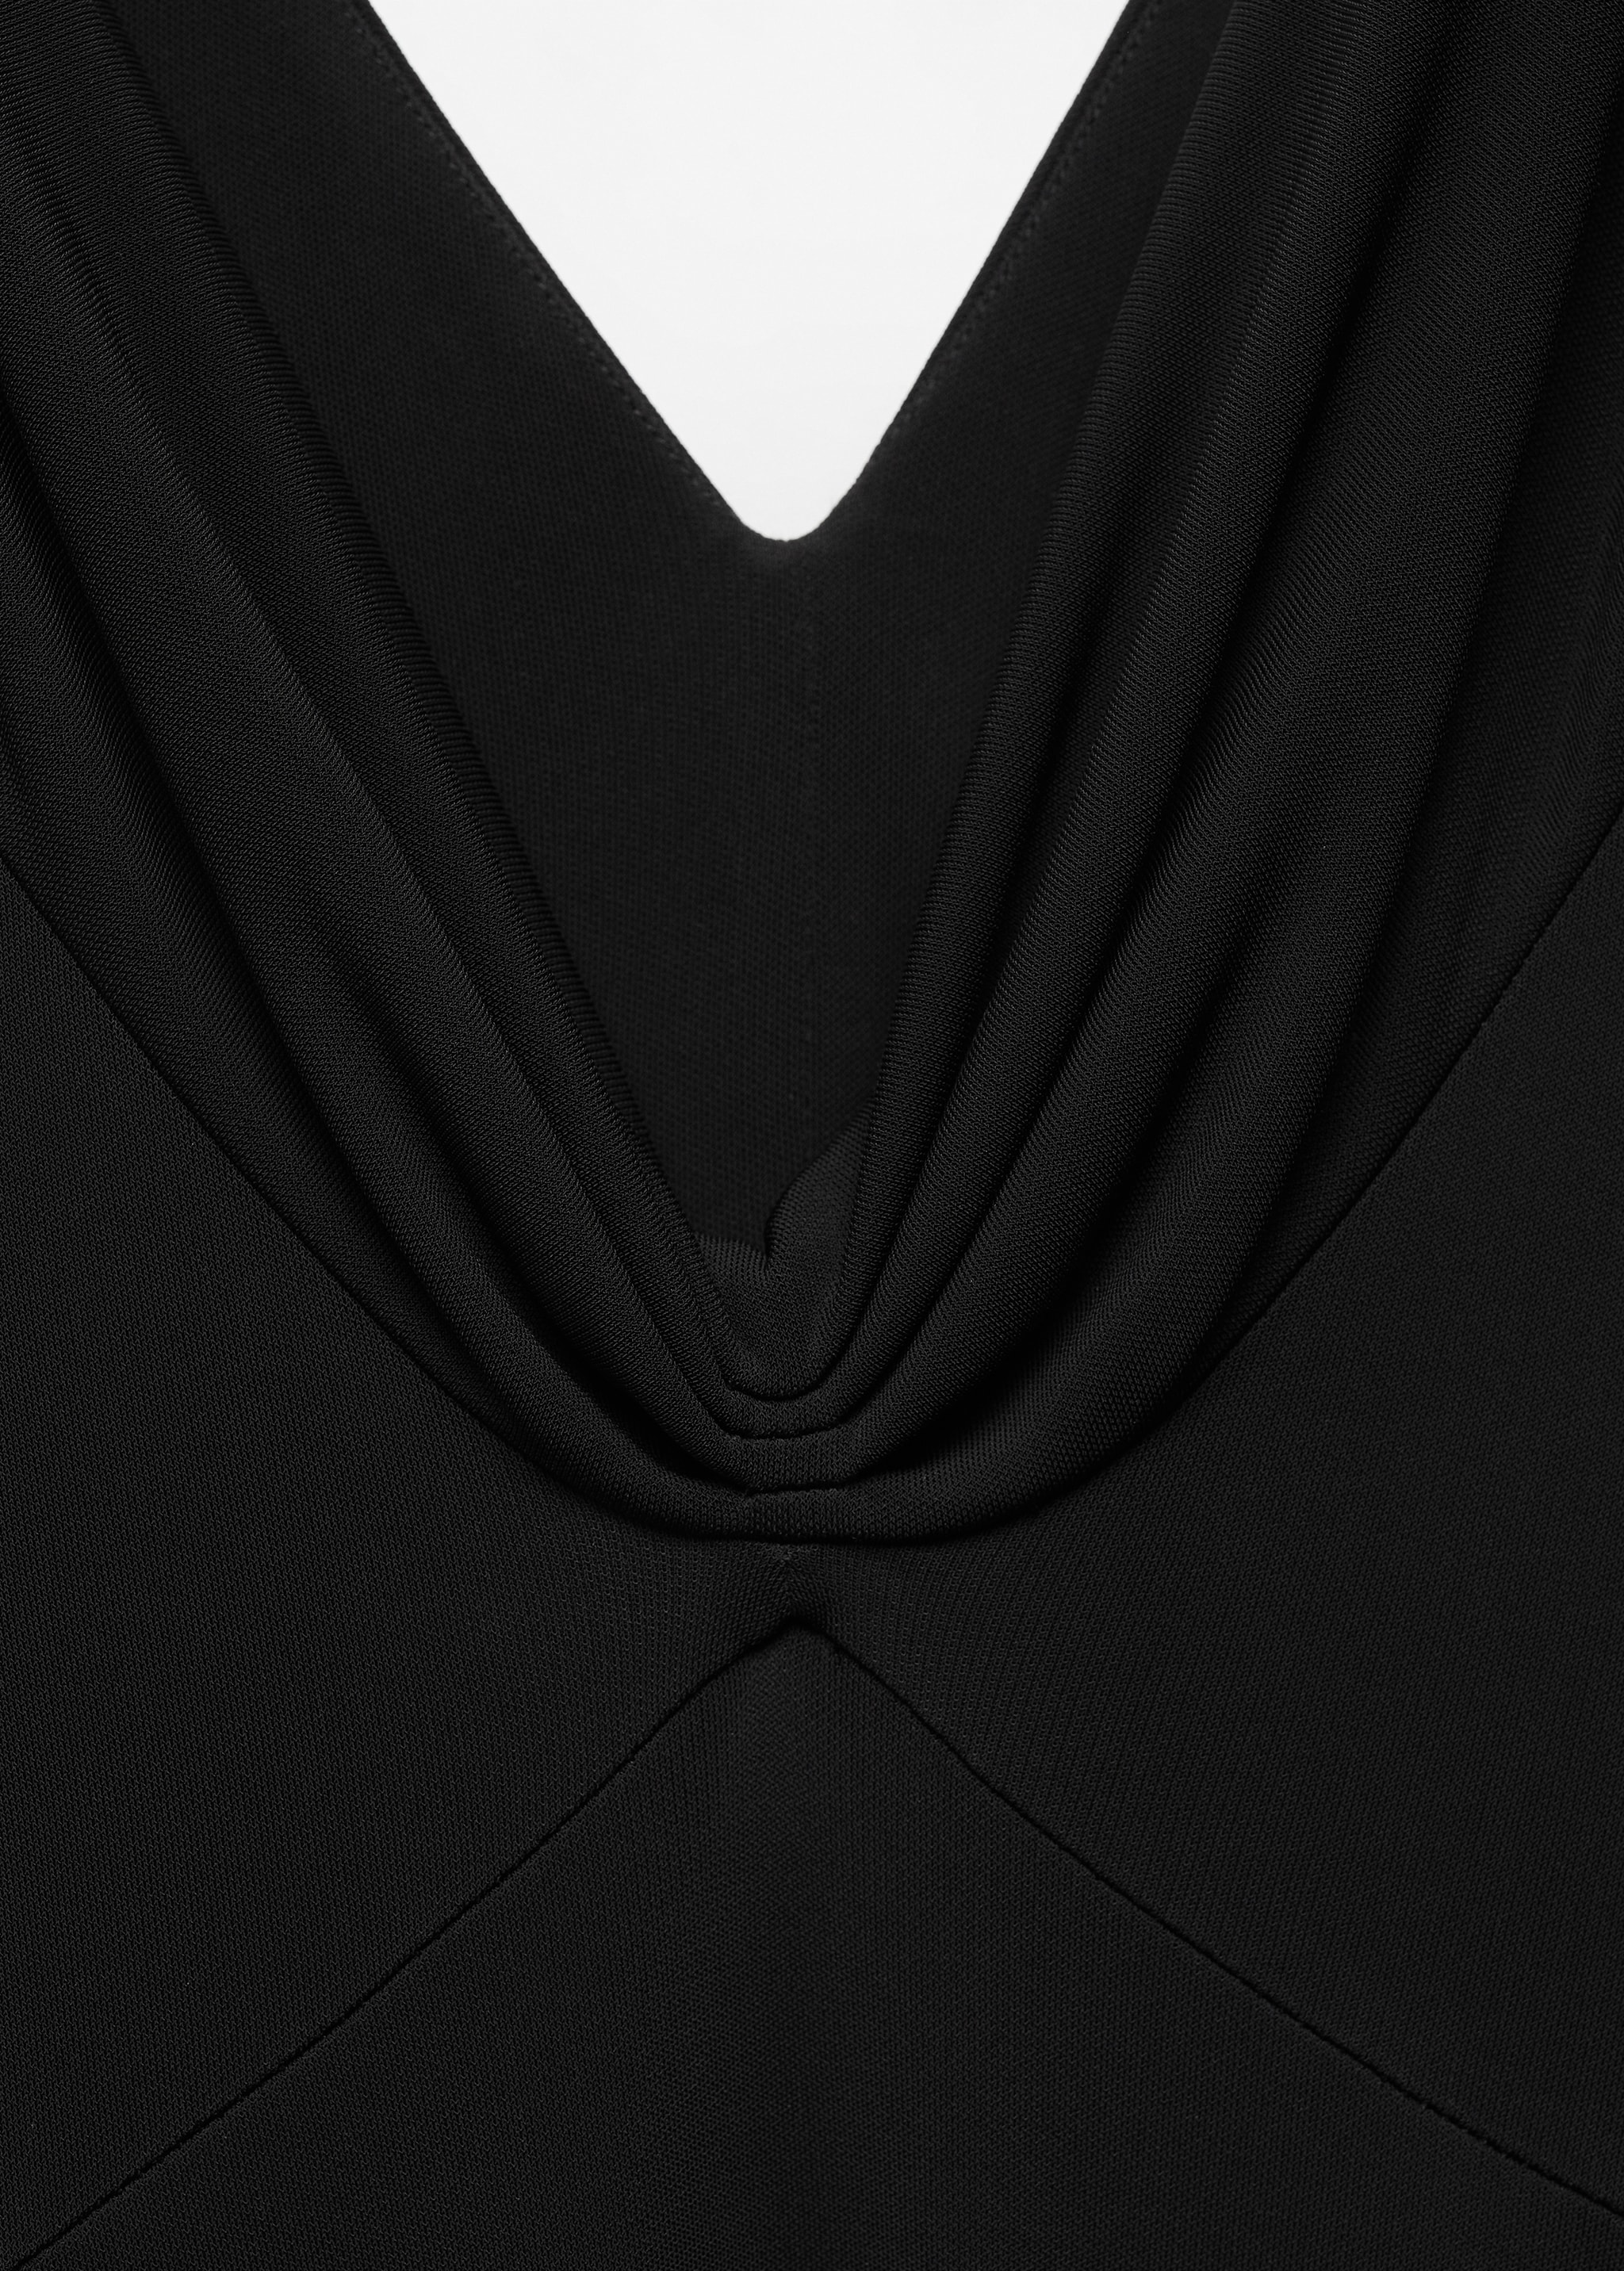 Трикотажное платье с драпированным декольте - Деталь изделия 8